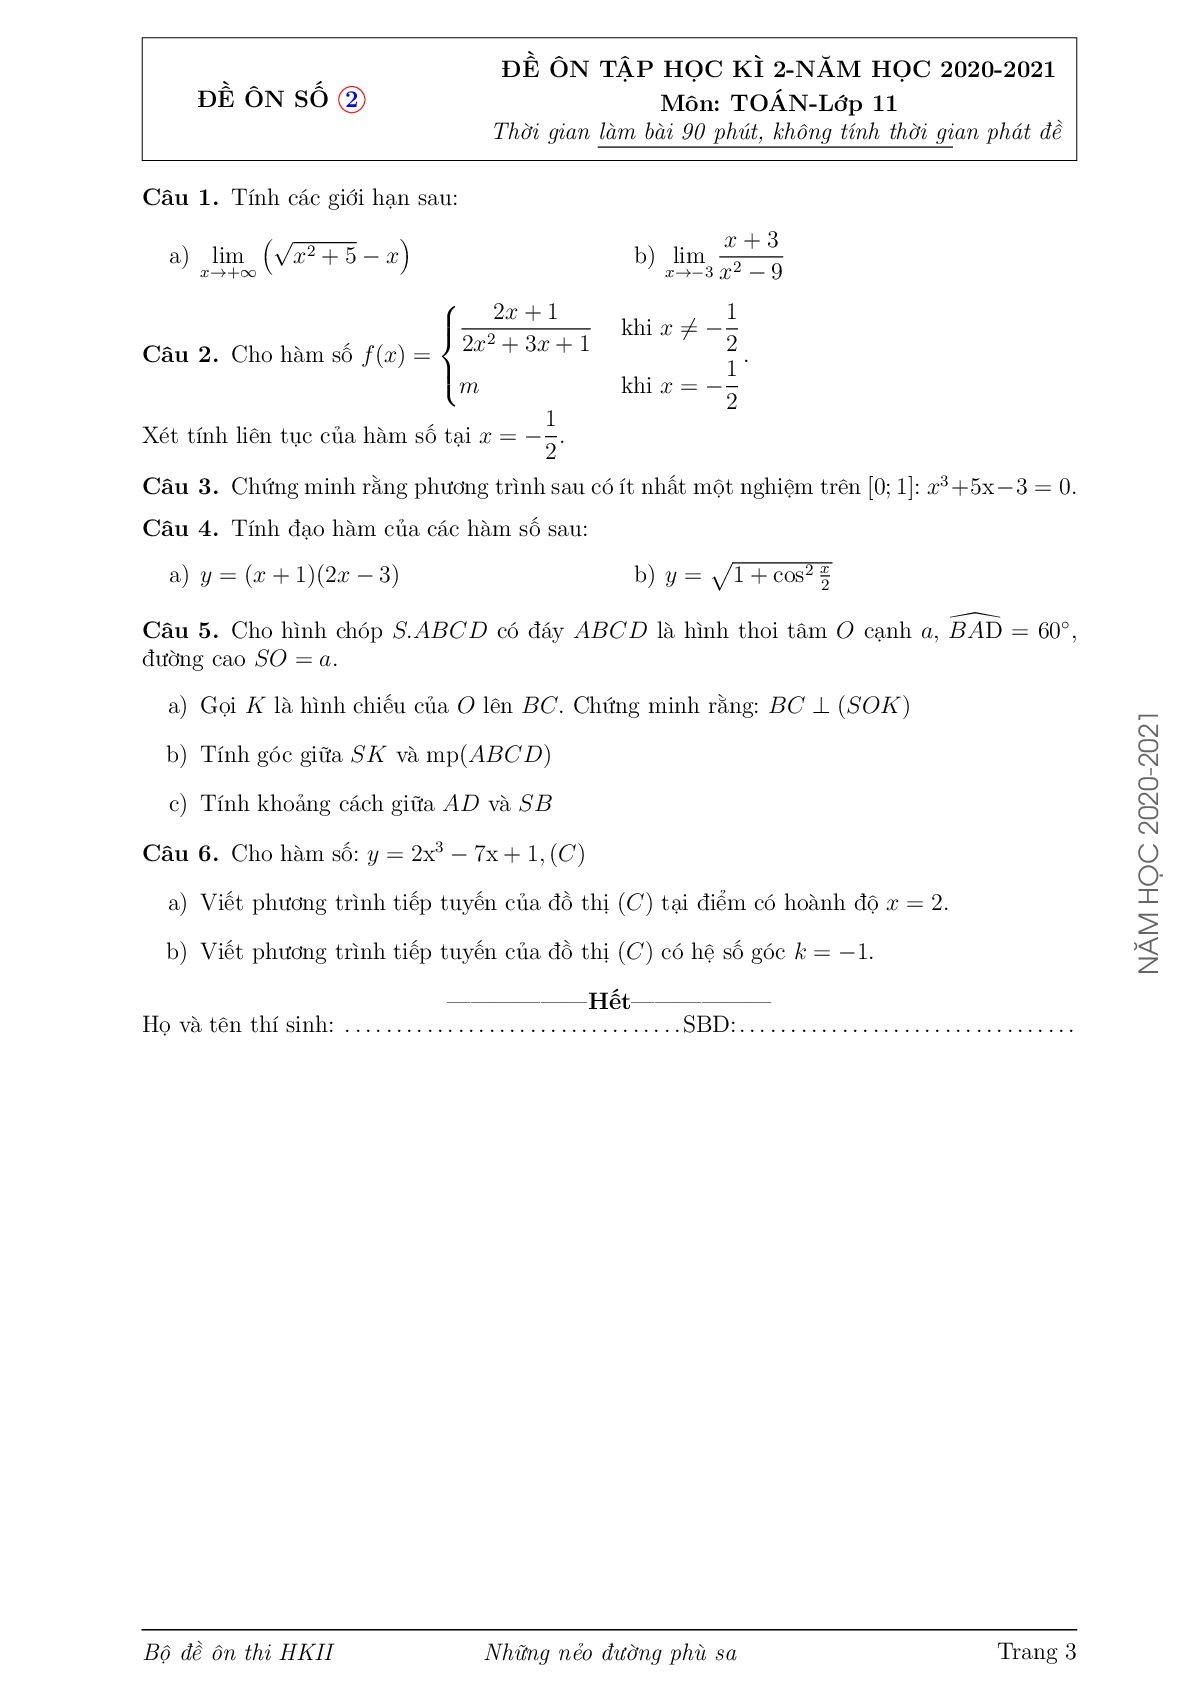 Bộ đề ôn thi học kỳ 2 môn Toán lớp 11 trường THCS-THPT Hoa Sen (trang 3)